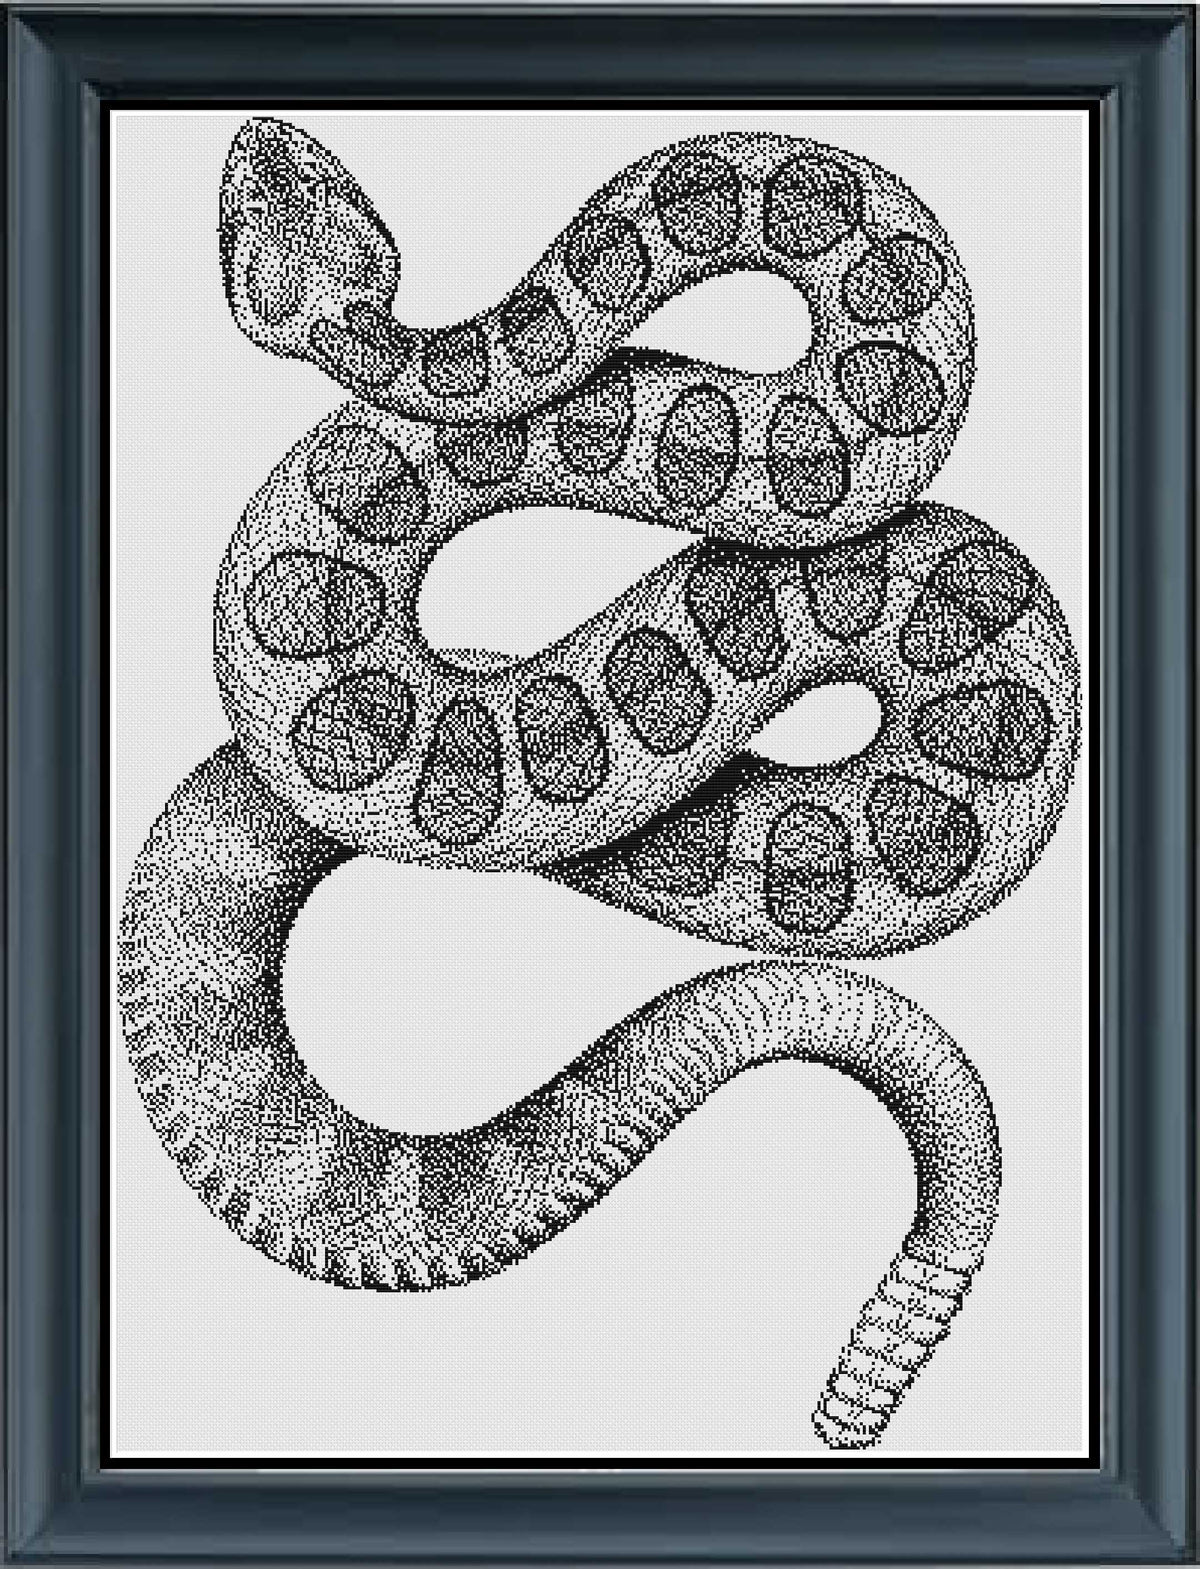 Stitching Jules Design Cross Stitch Pattern Digital PDF Download - $10 Snake Cross Stitch Pattern | Reptile Cross Stitch Pattern | Blackwork | Instant PDF Download And Physical Pattern Options